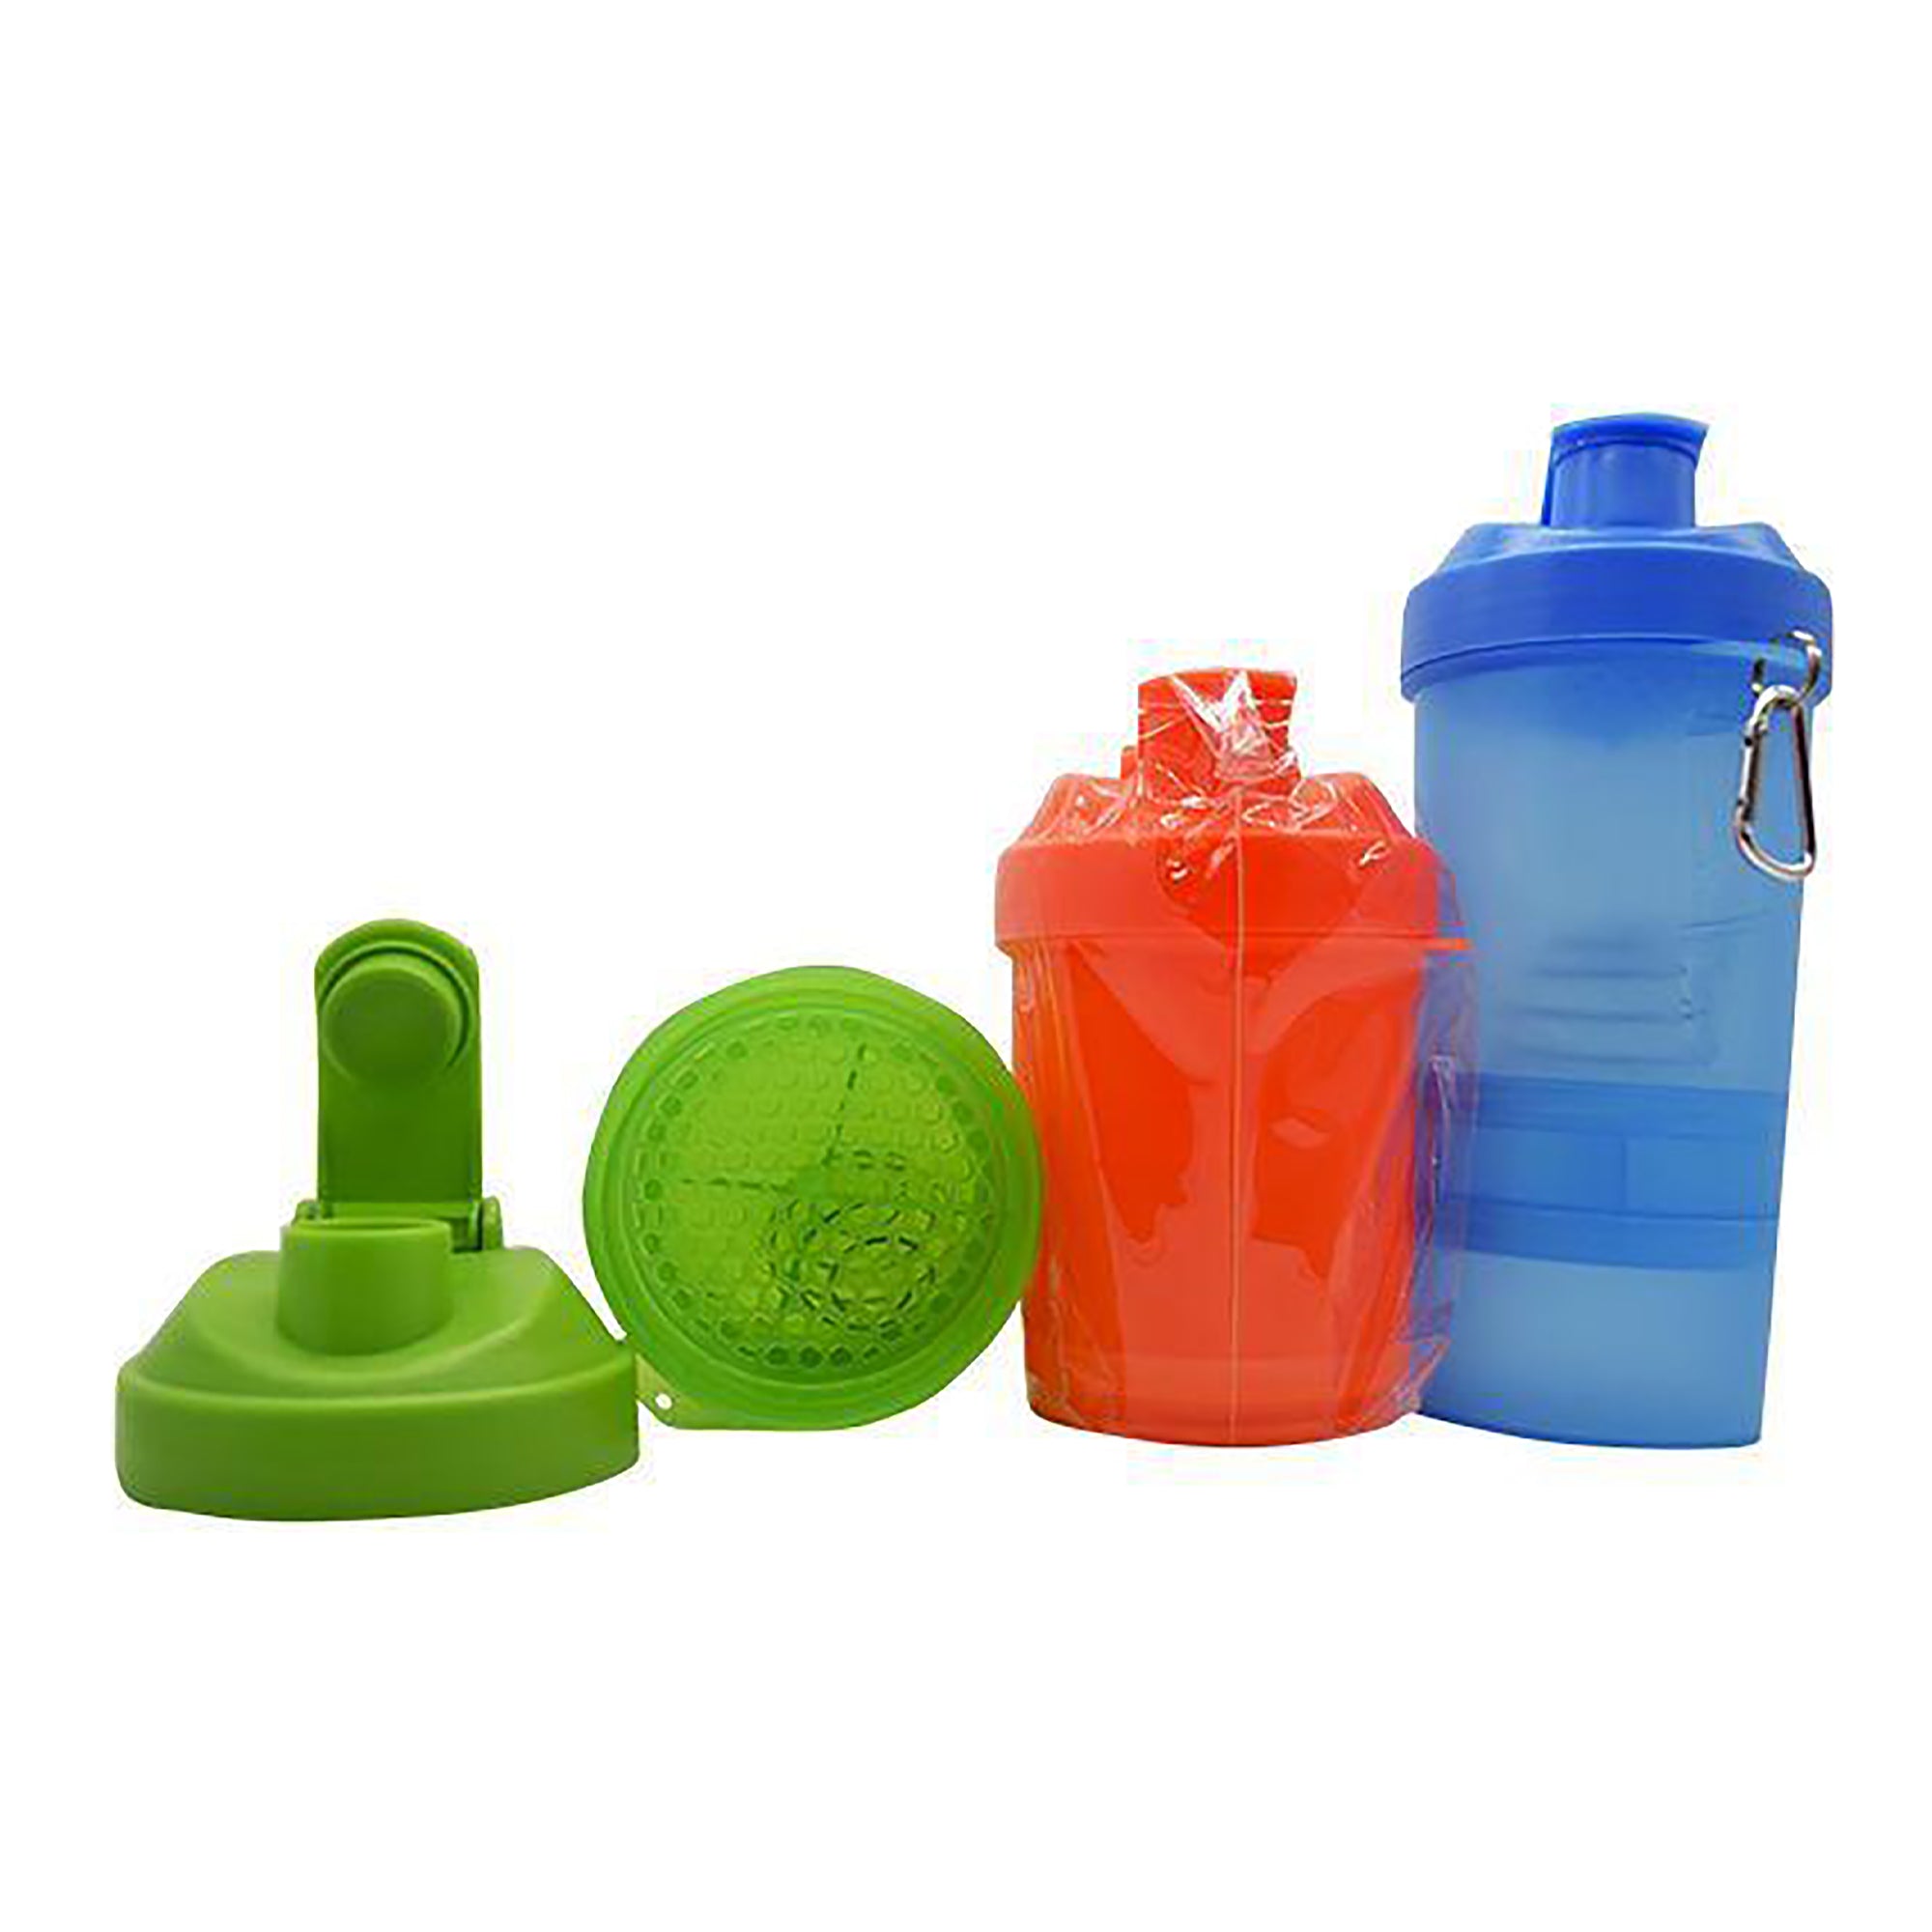 Vaso shaker con compartimentos varios colores 450 ml